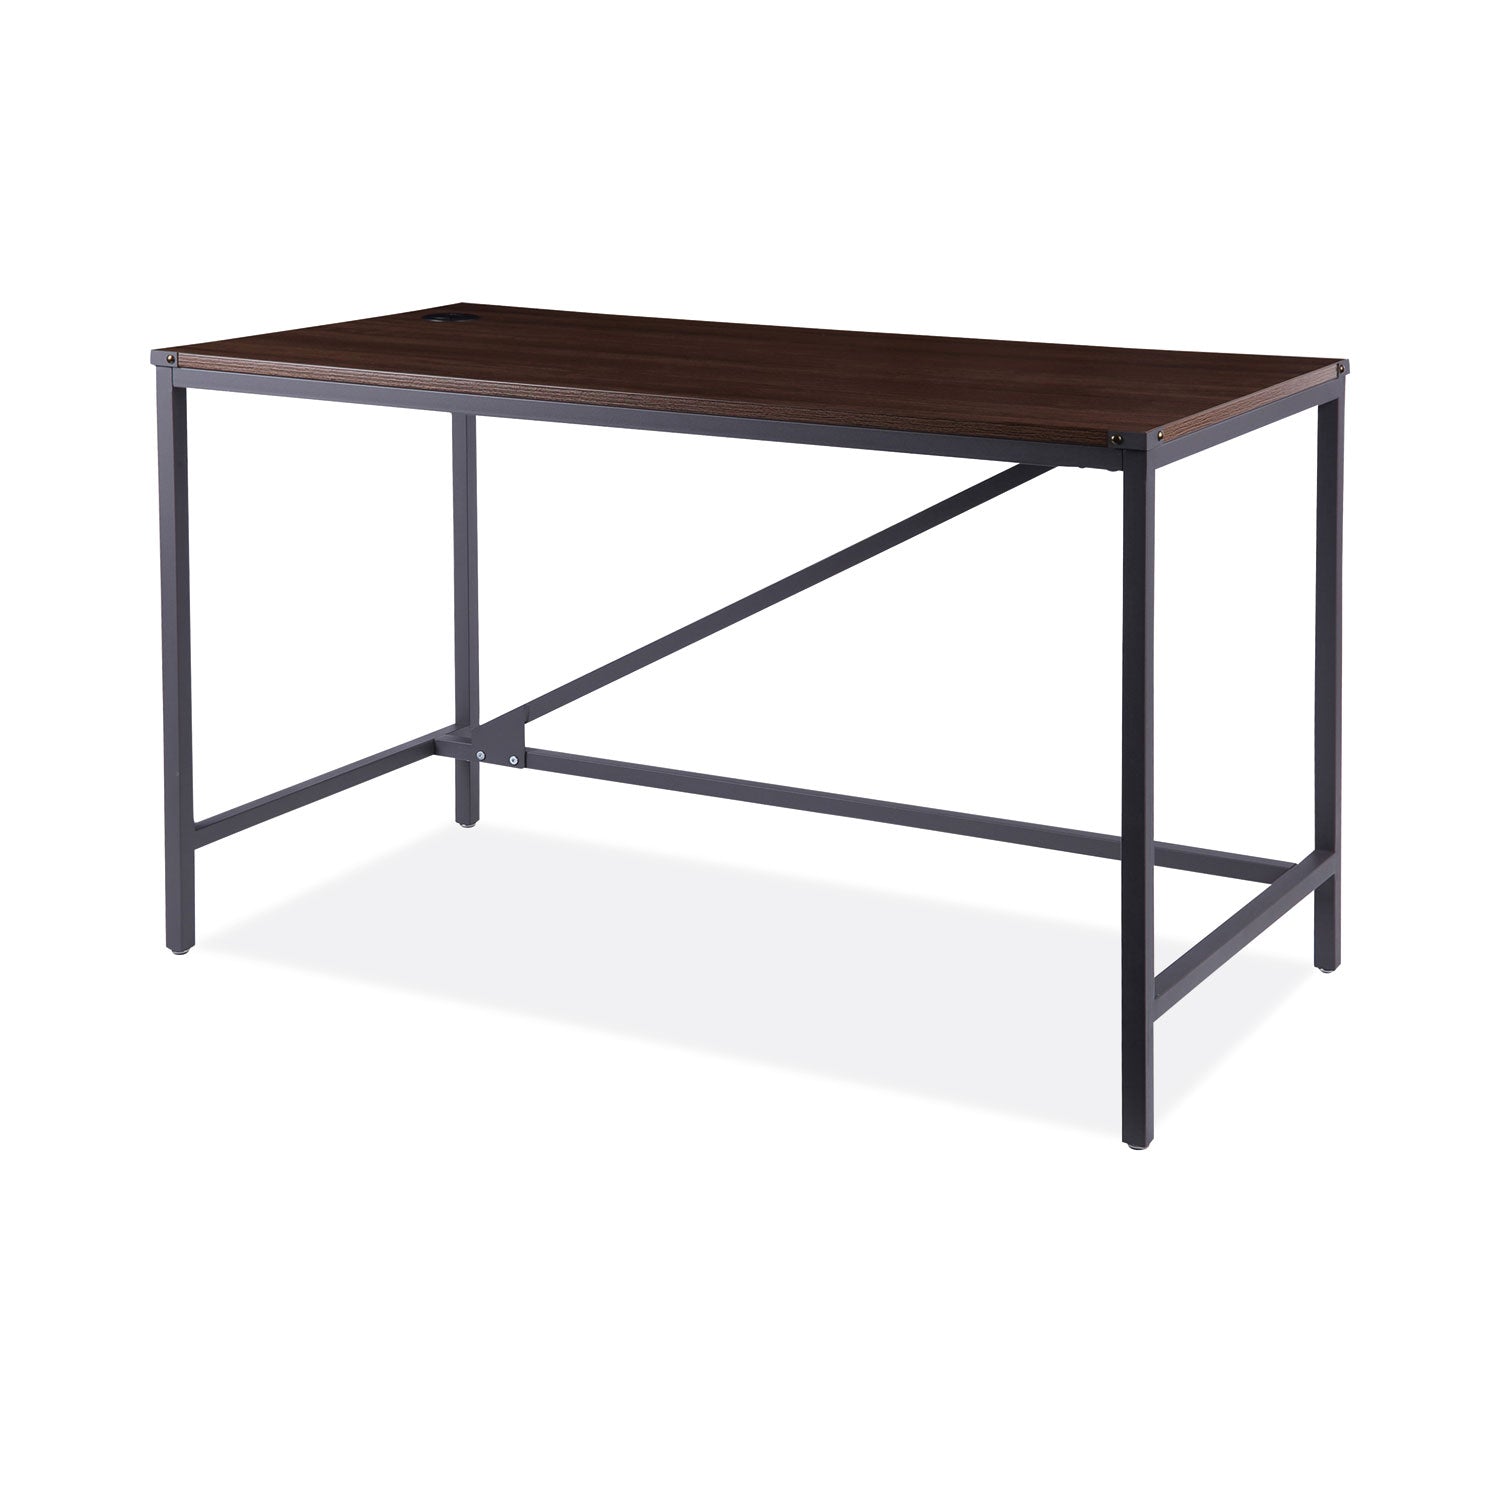 industrial-series-table-desk-4725-x-2363-x-295-modern-walnut_aleltd4824wa - 1